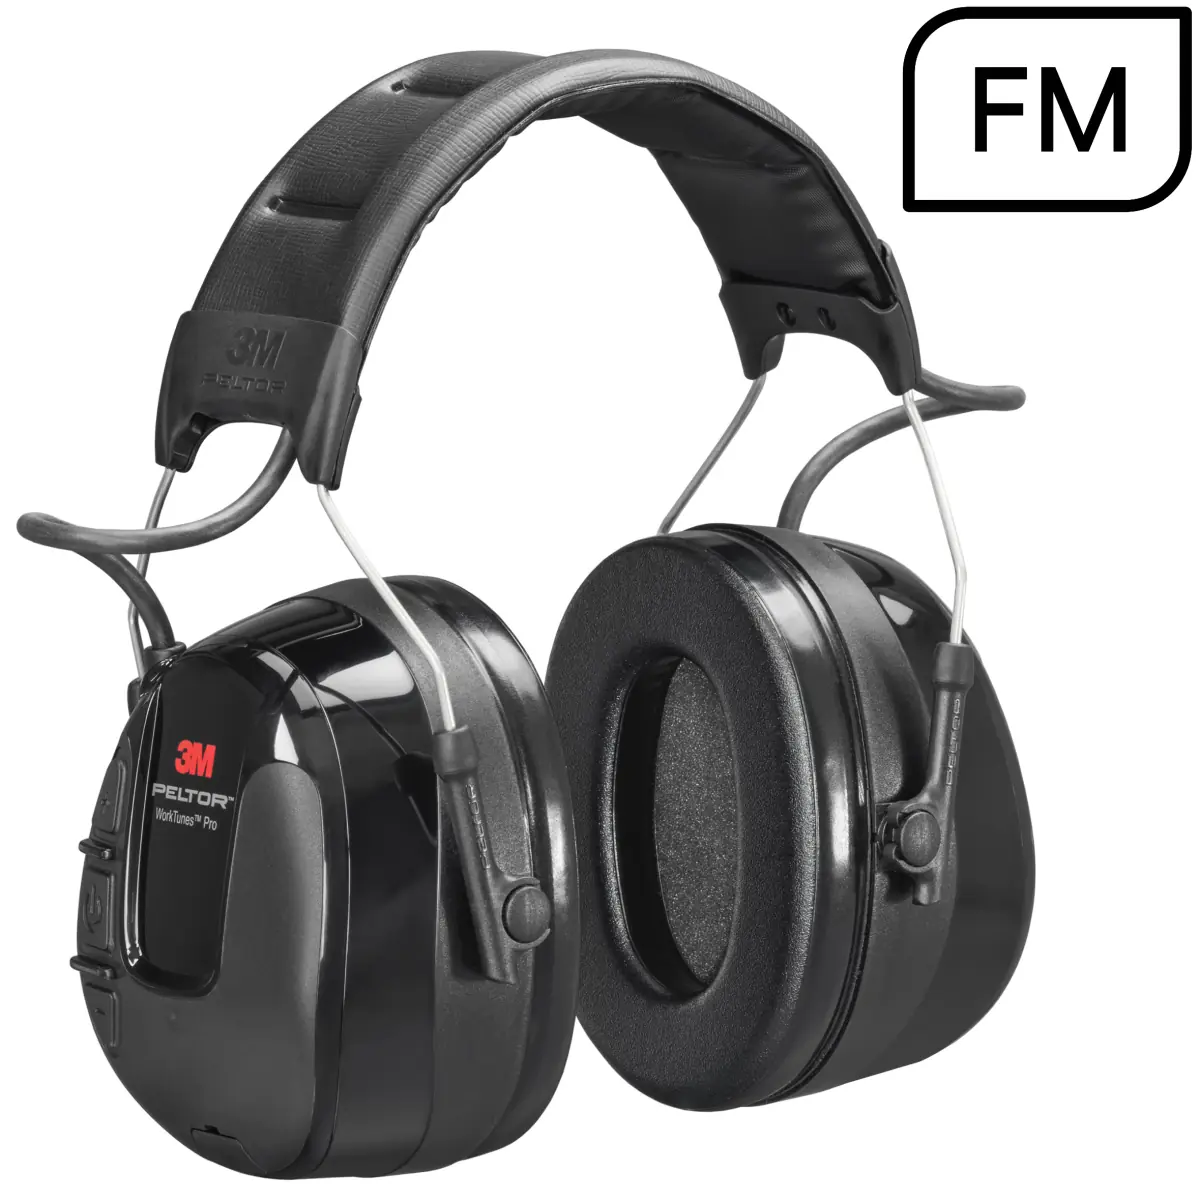 3M Peltor WorkTunes Pro FM Radio - Casque antibruit radio fm - HRXS220A - coquilles avec radio FM